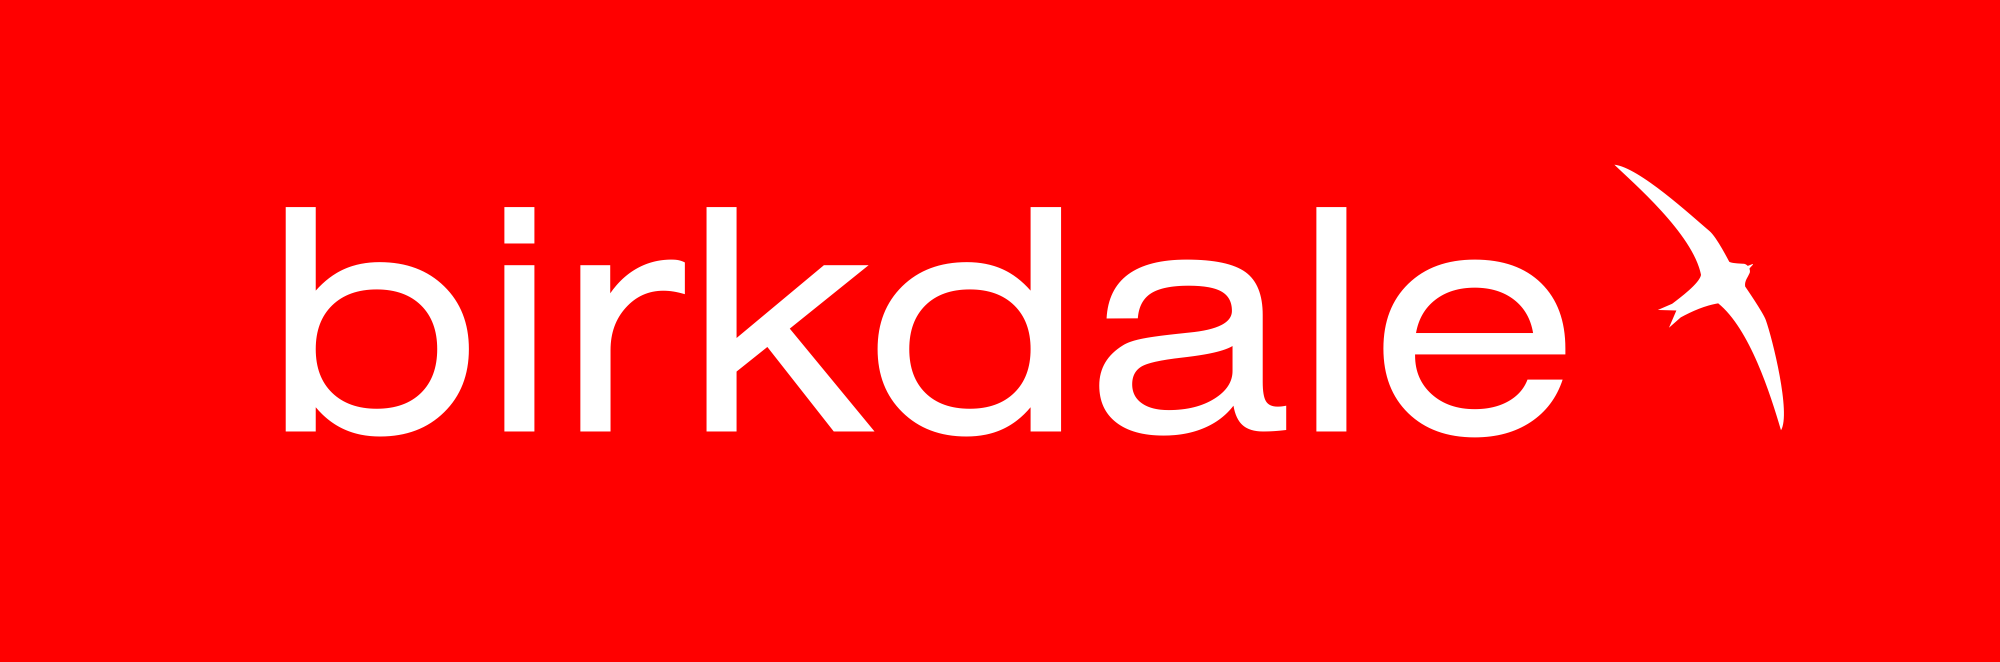 Birkdale logo HQ.png